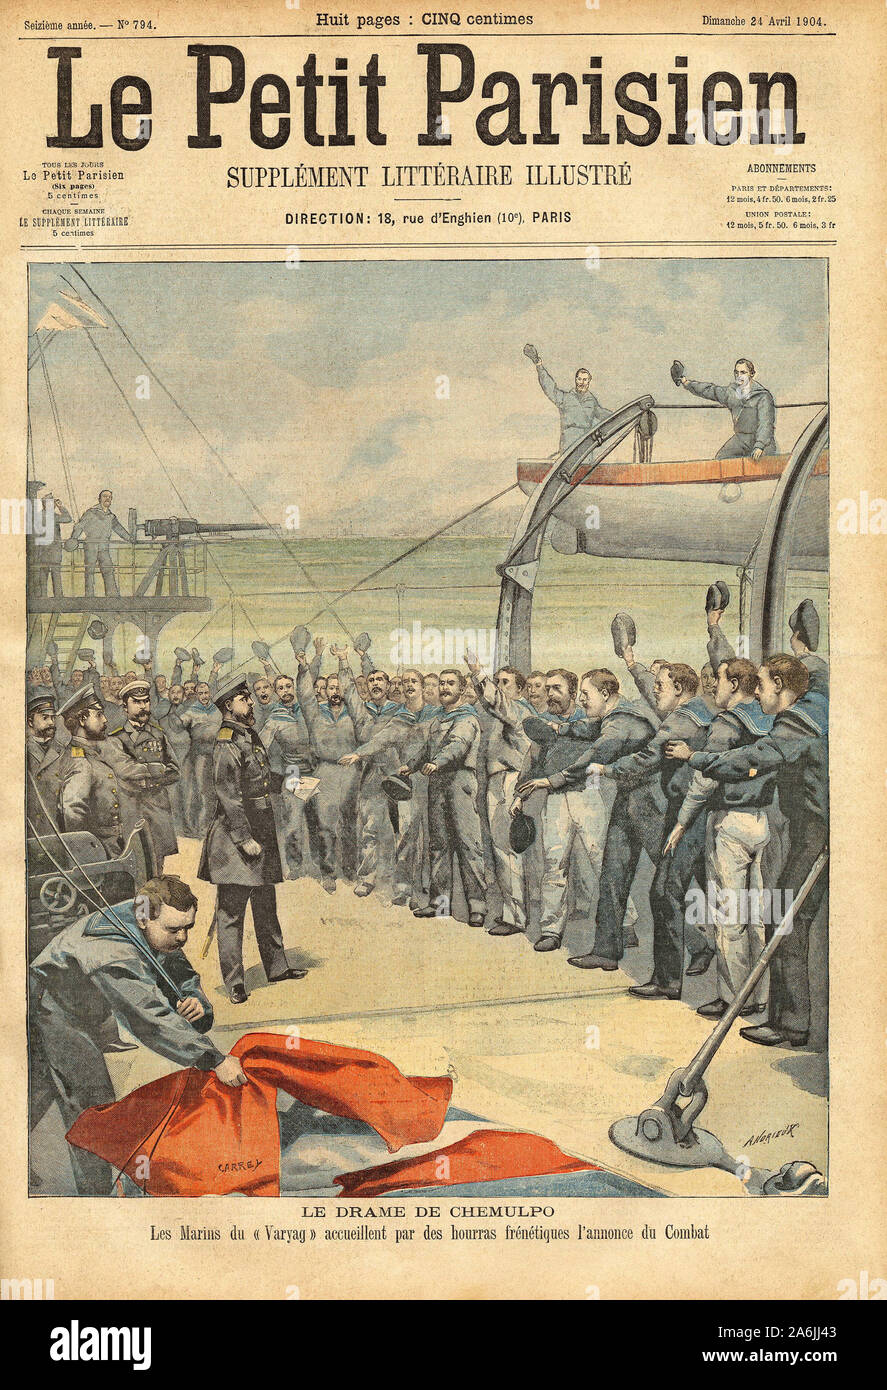 Lancement du navire russe, le 'Varyag' dans la bataille de Chemulpo (Inchon en Coree) contre les Japonais. Gravure in 'Le Petit Parisien', le 24/04/19 Stock Photo